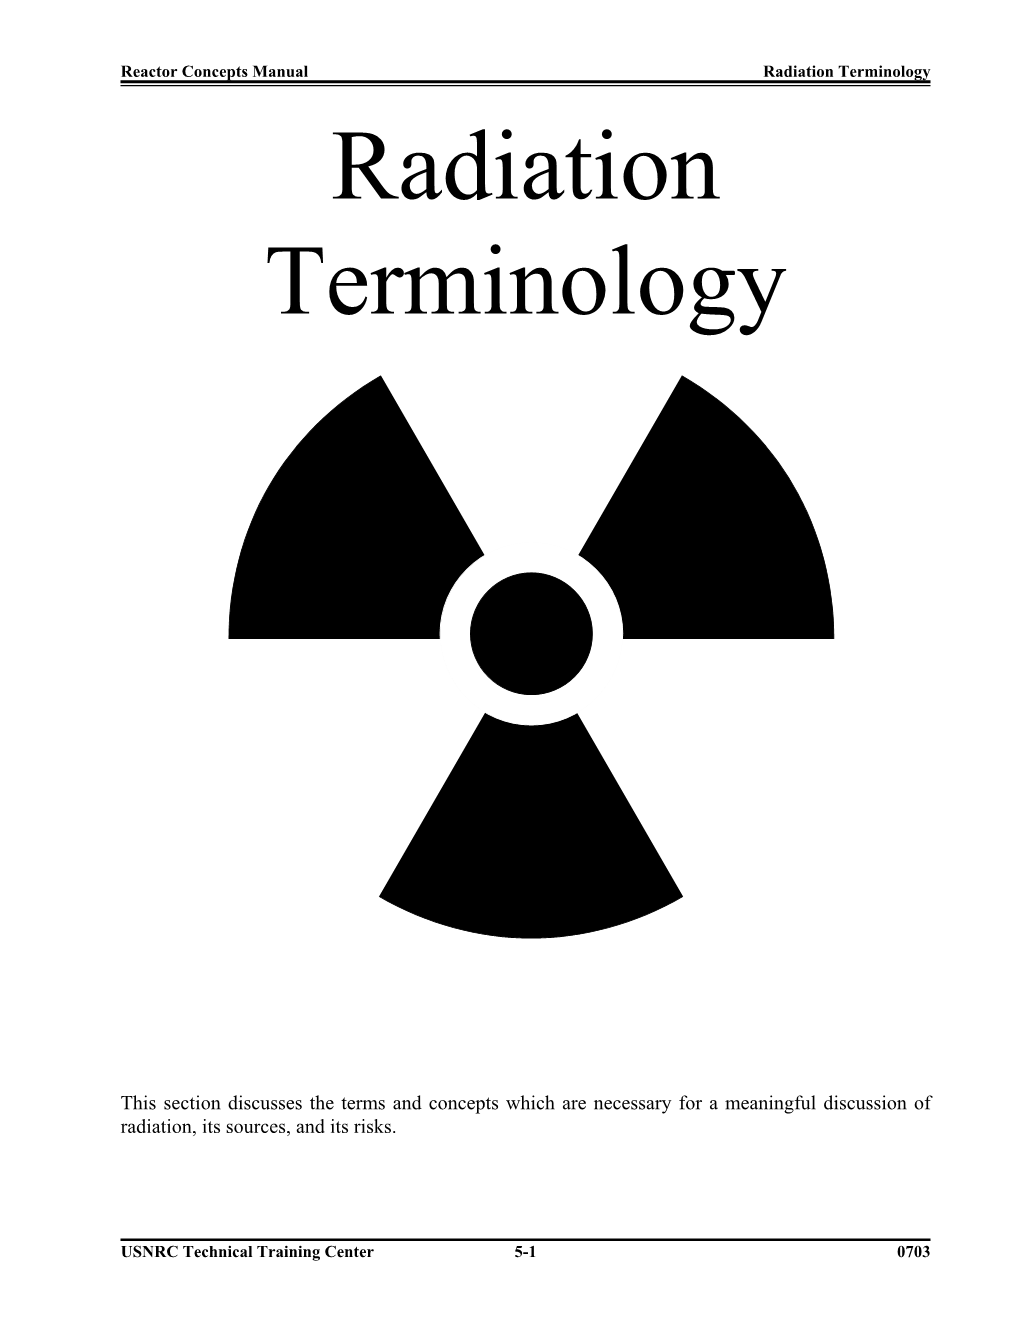 Radiation Terminology Radiation Terminology